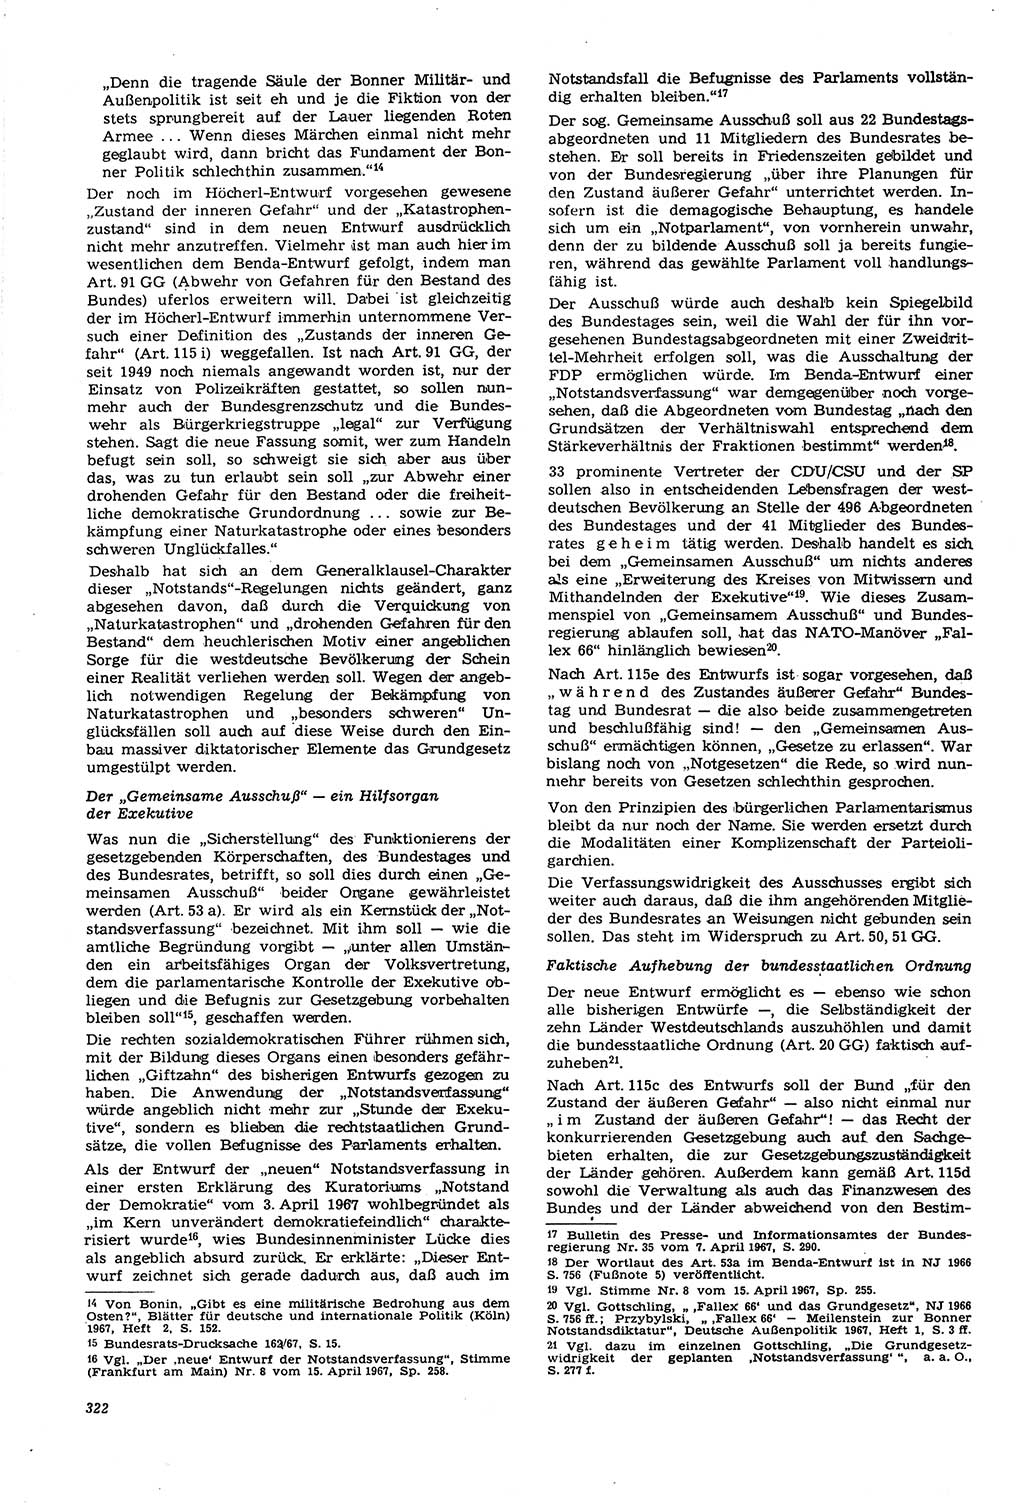 Neue Justiz (NJ), Zeitschrift für Recht und Rechtswissenschaft [Deutsche Demokratische Republik (DDR)], 21. Jahrgang 1967, Seite 322 (NJ DDR 1967, S. 322)